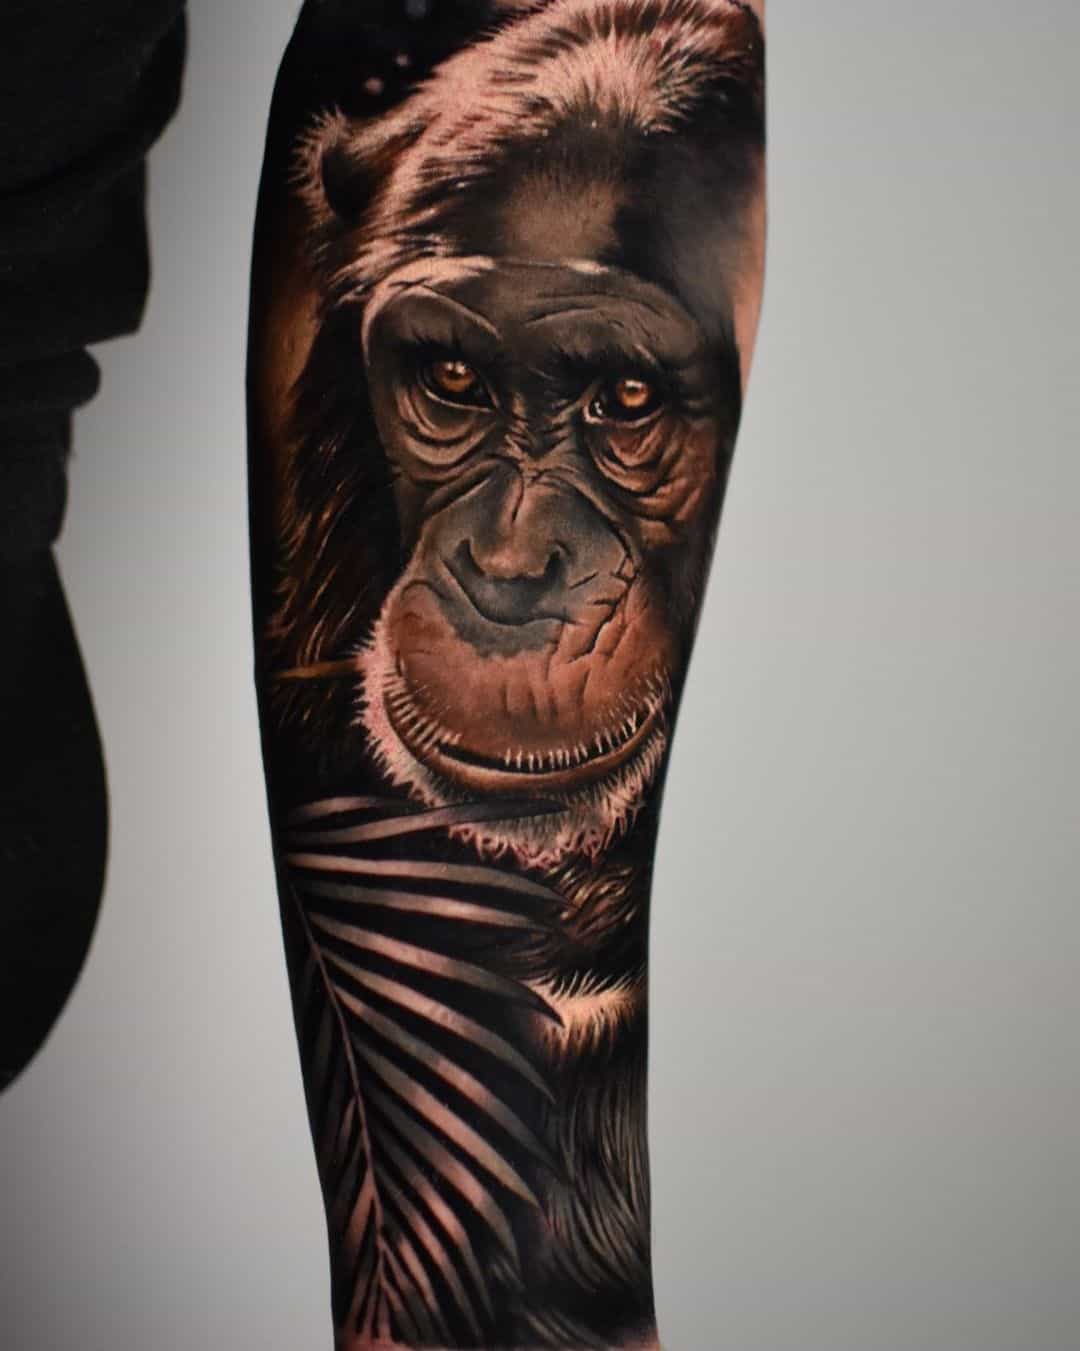 Chimpanzee tattoo by k peanut